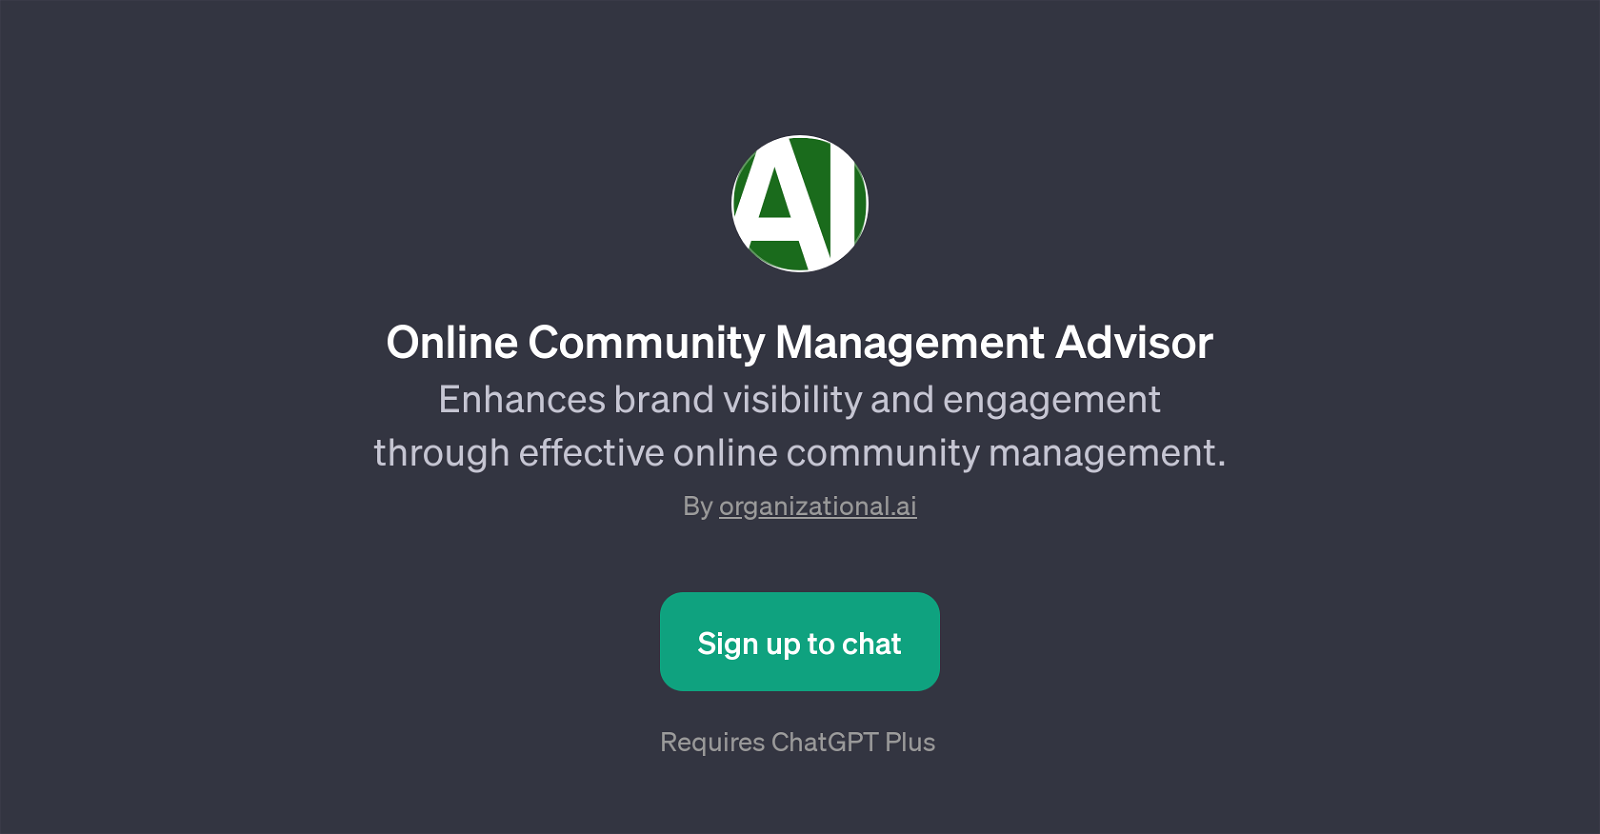 Online Community Management Advisor website